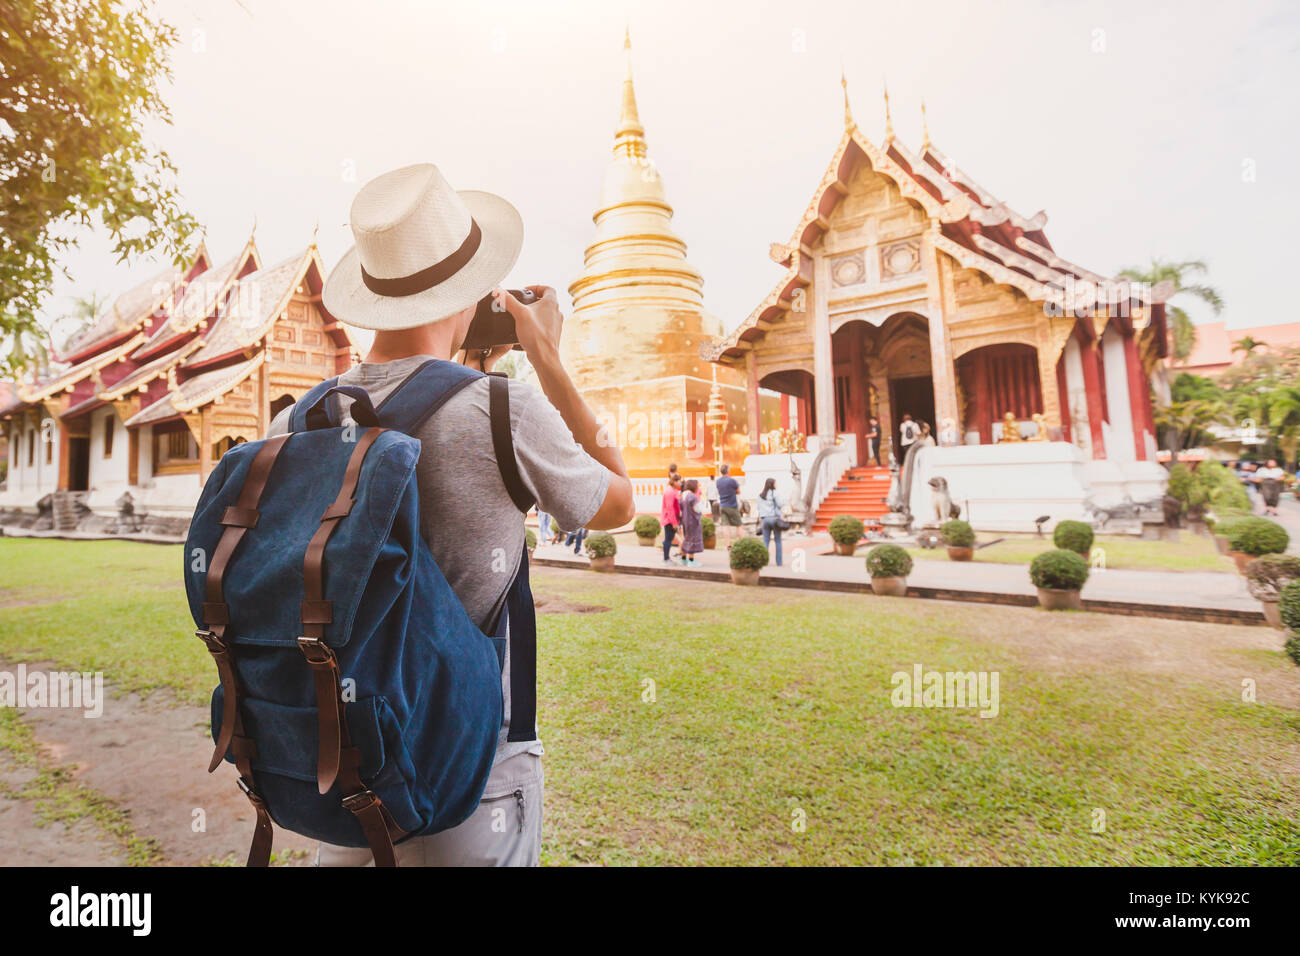 travel to Asia, tourist photographer taking photo of temple or landmark, tourism in Thailand Stock Photo